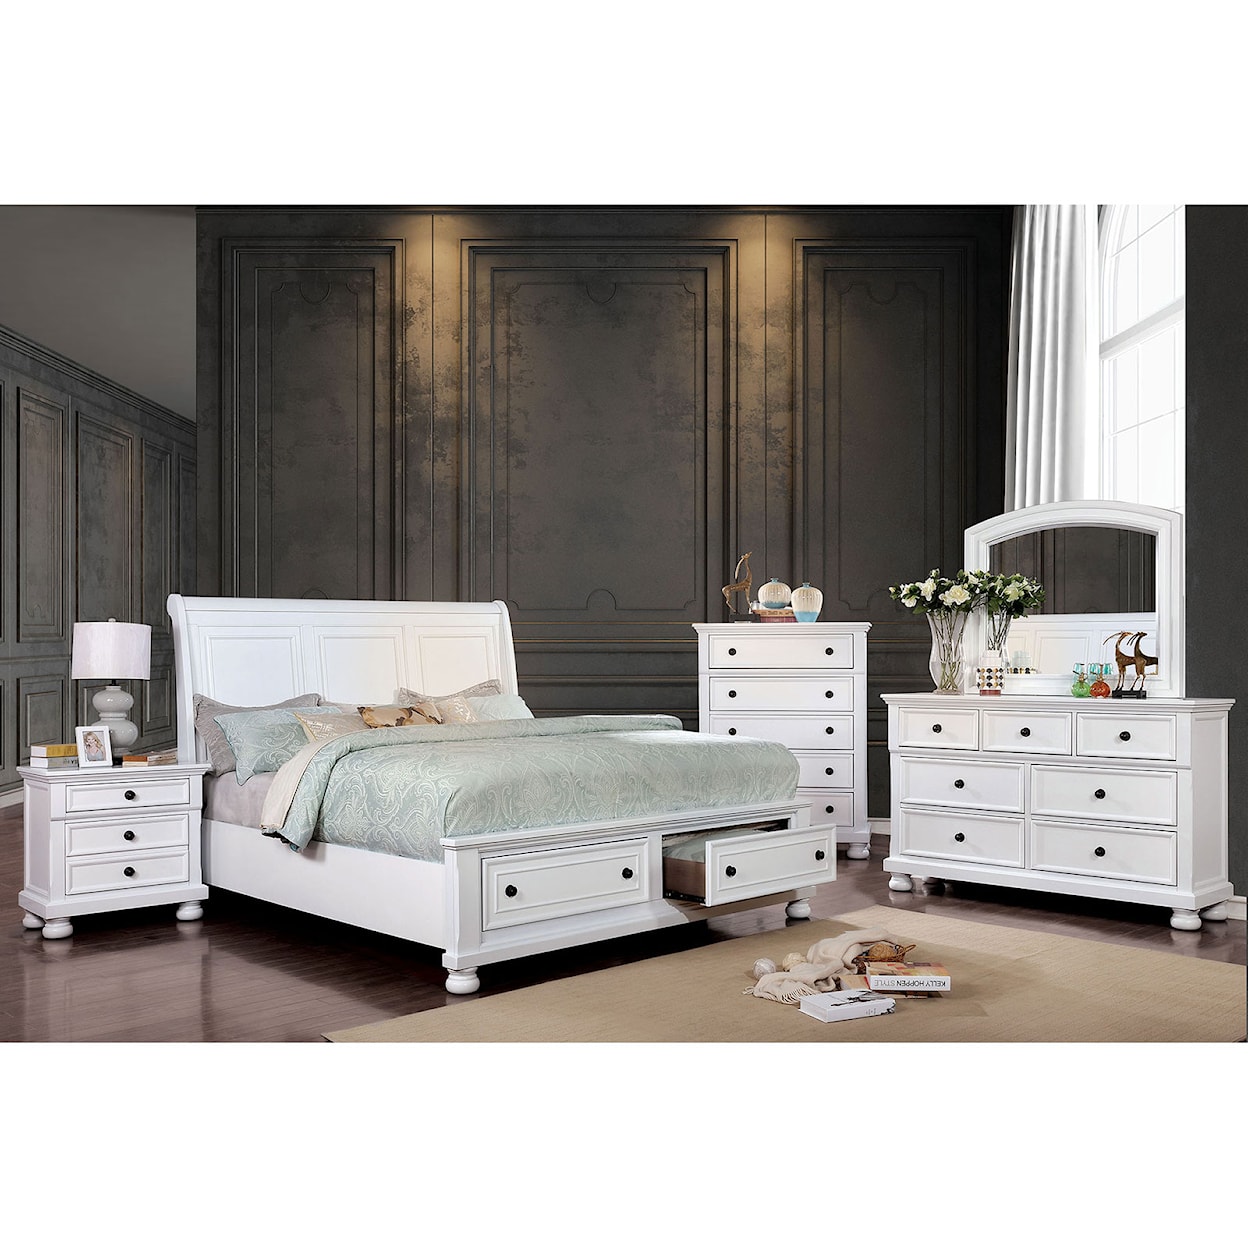 Furniture of America Castor King Bedroom Set